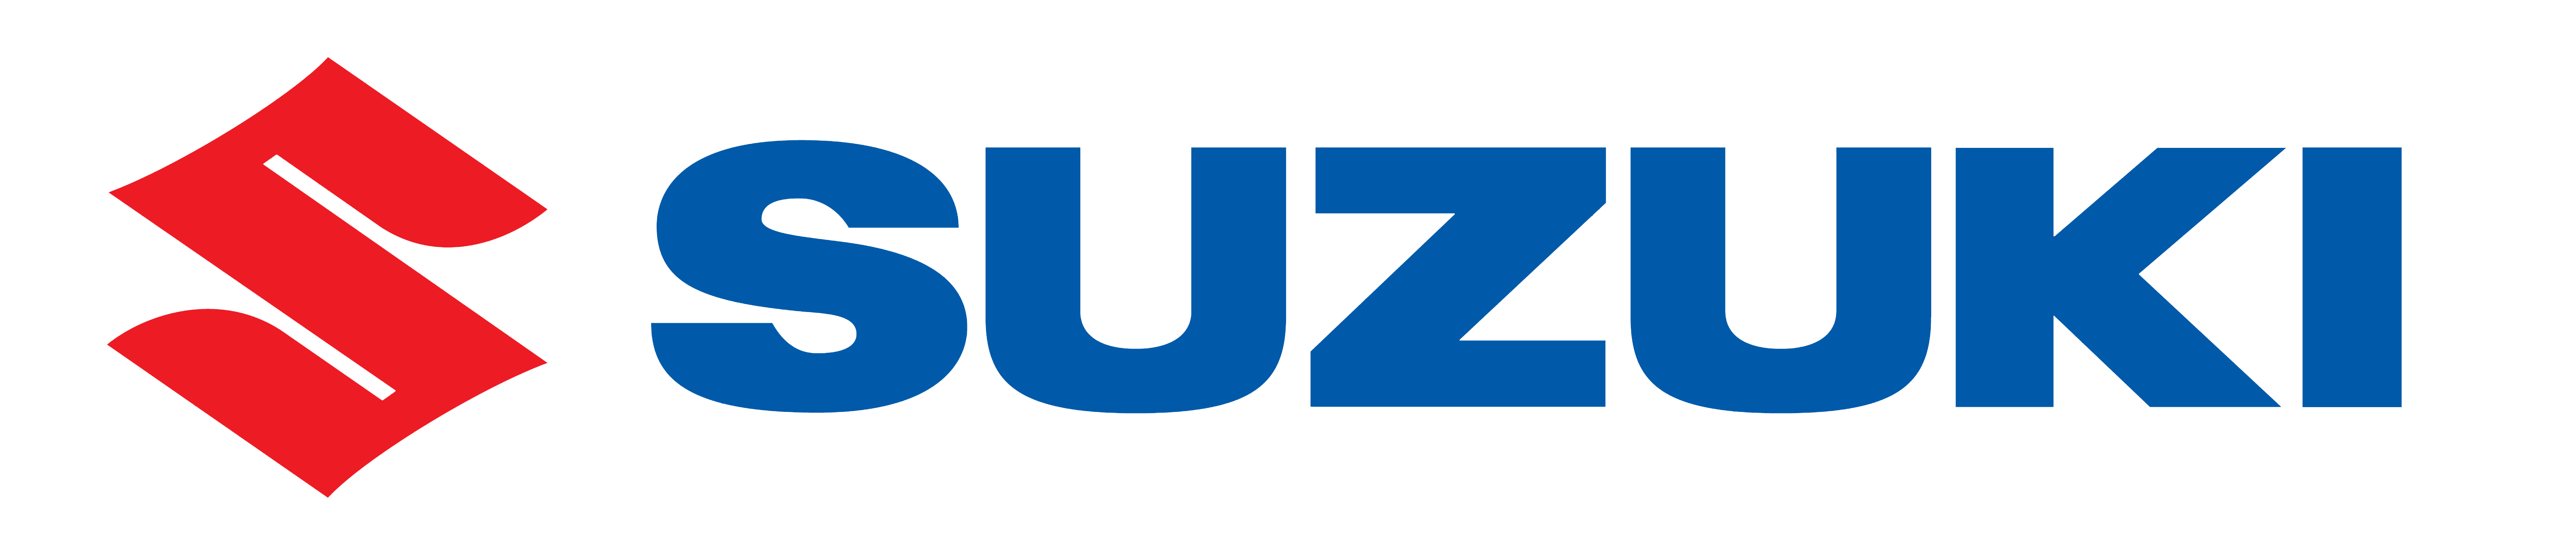 suzuki-logo-6500x1400.png